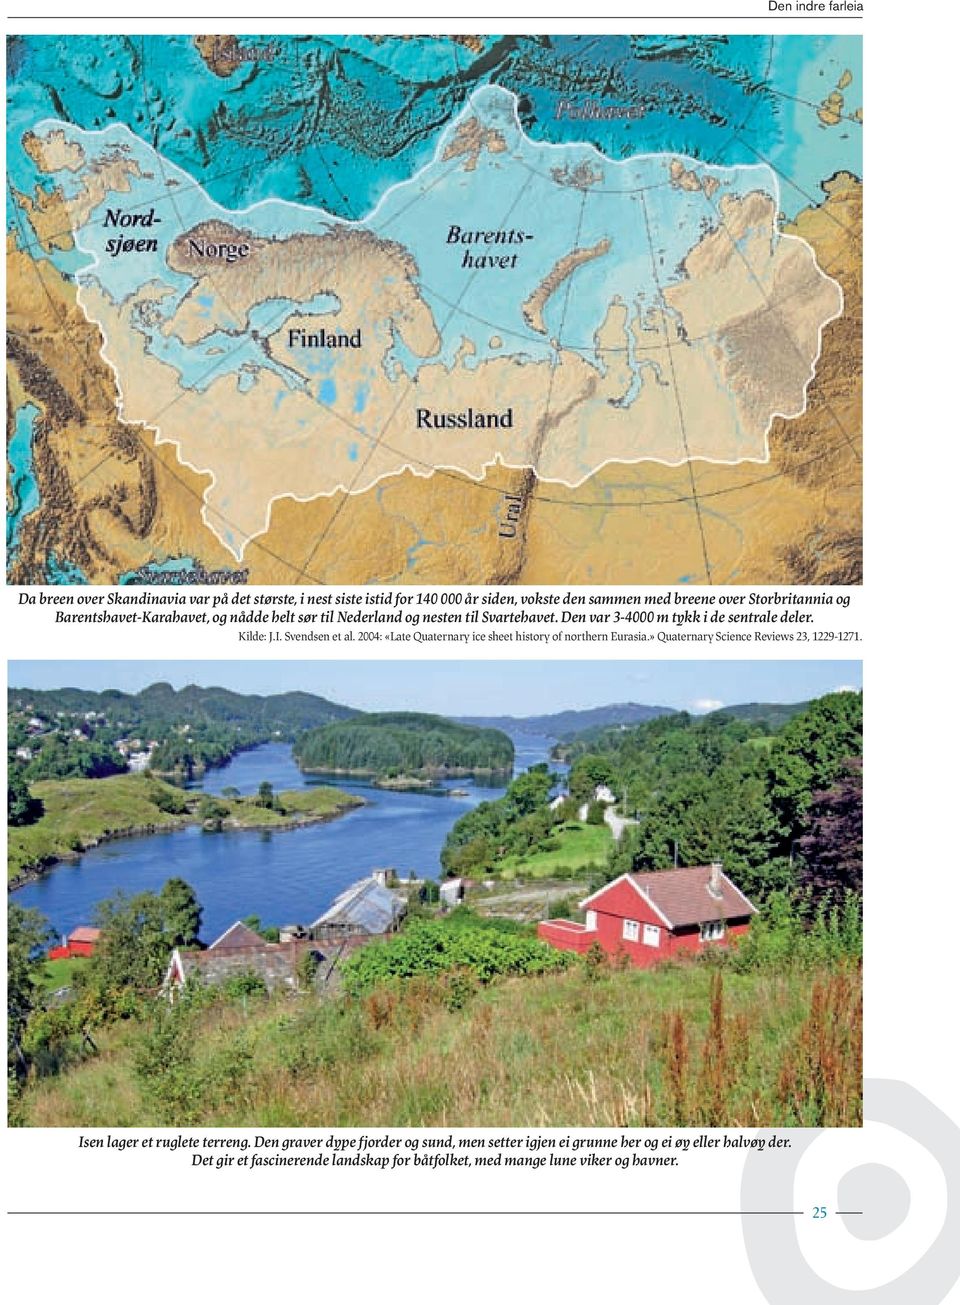 Svendsen et al. 2004: «Late Quaternary ice sheet history of northern Eurasia.» Quaternary Science Reviews 23, 1229-1271. Isen lager et ruglete terreng.